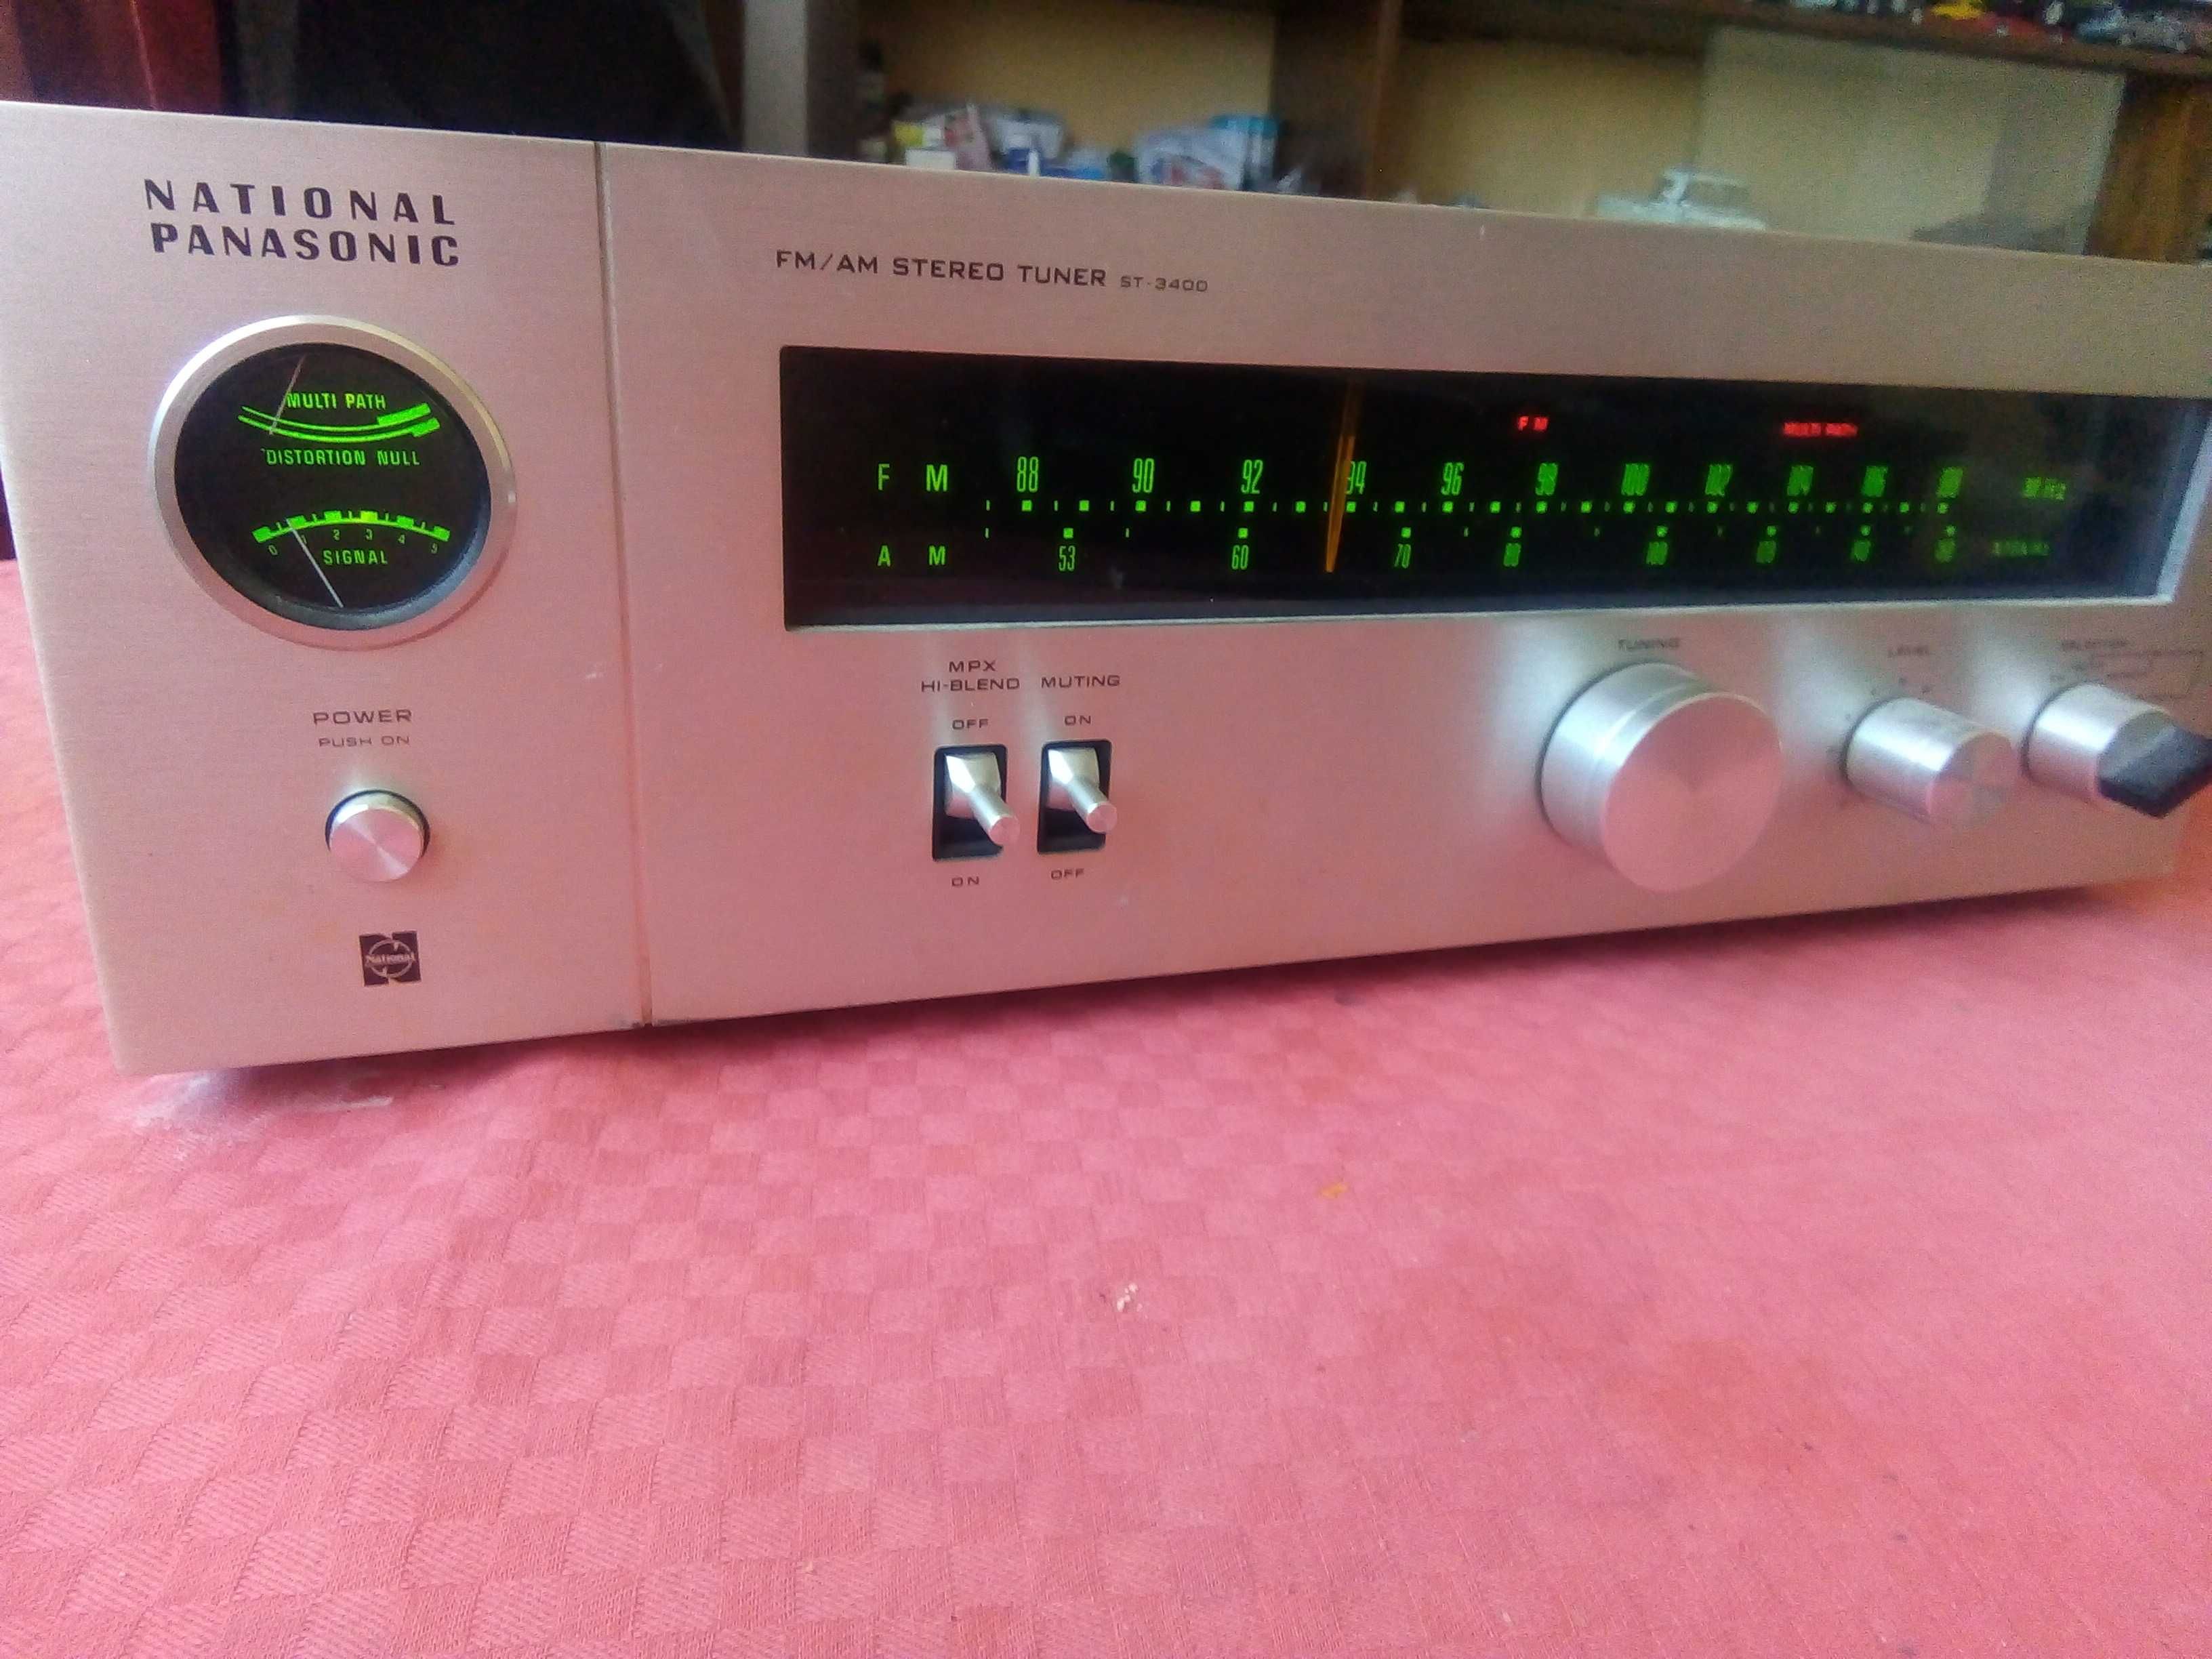 FM/AM Stereo Tuner ST-3400 Radio Panasonic, Matsushita